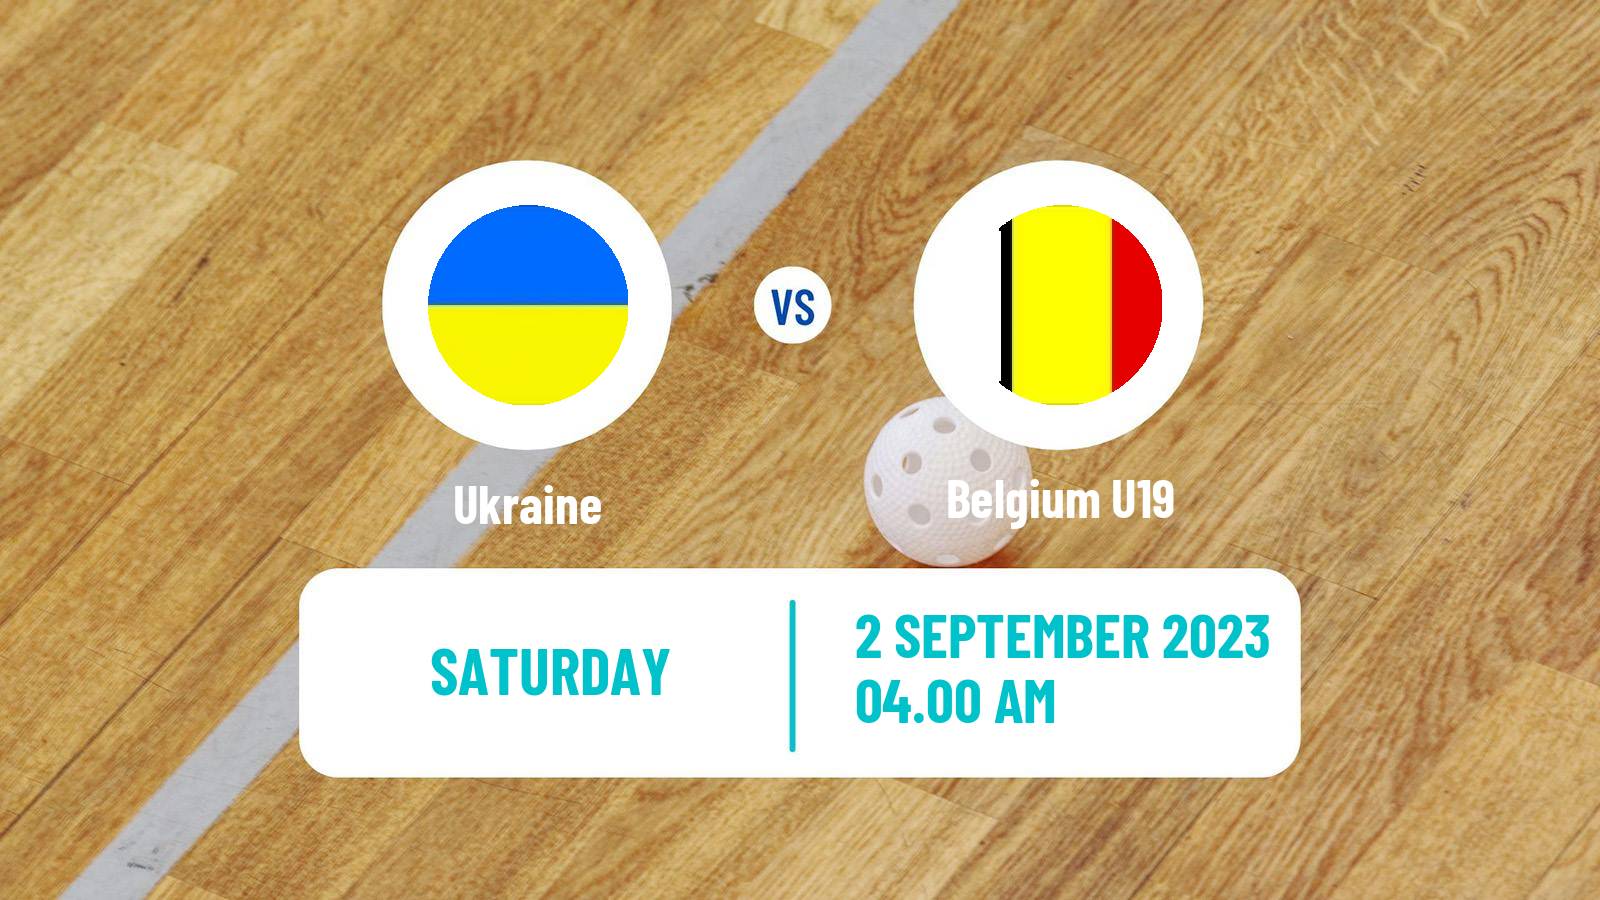 Floorball Friendly International Floorball Ukraine - Belgium U19